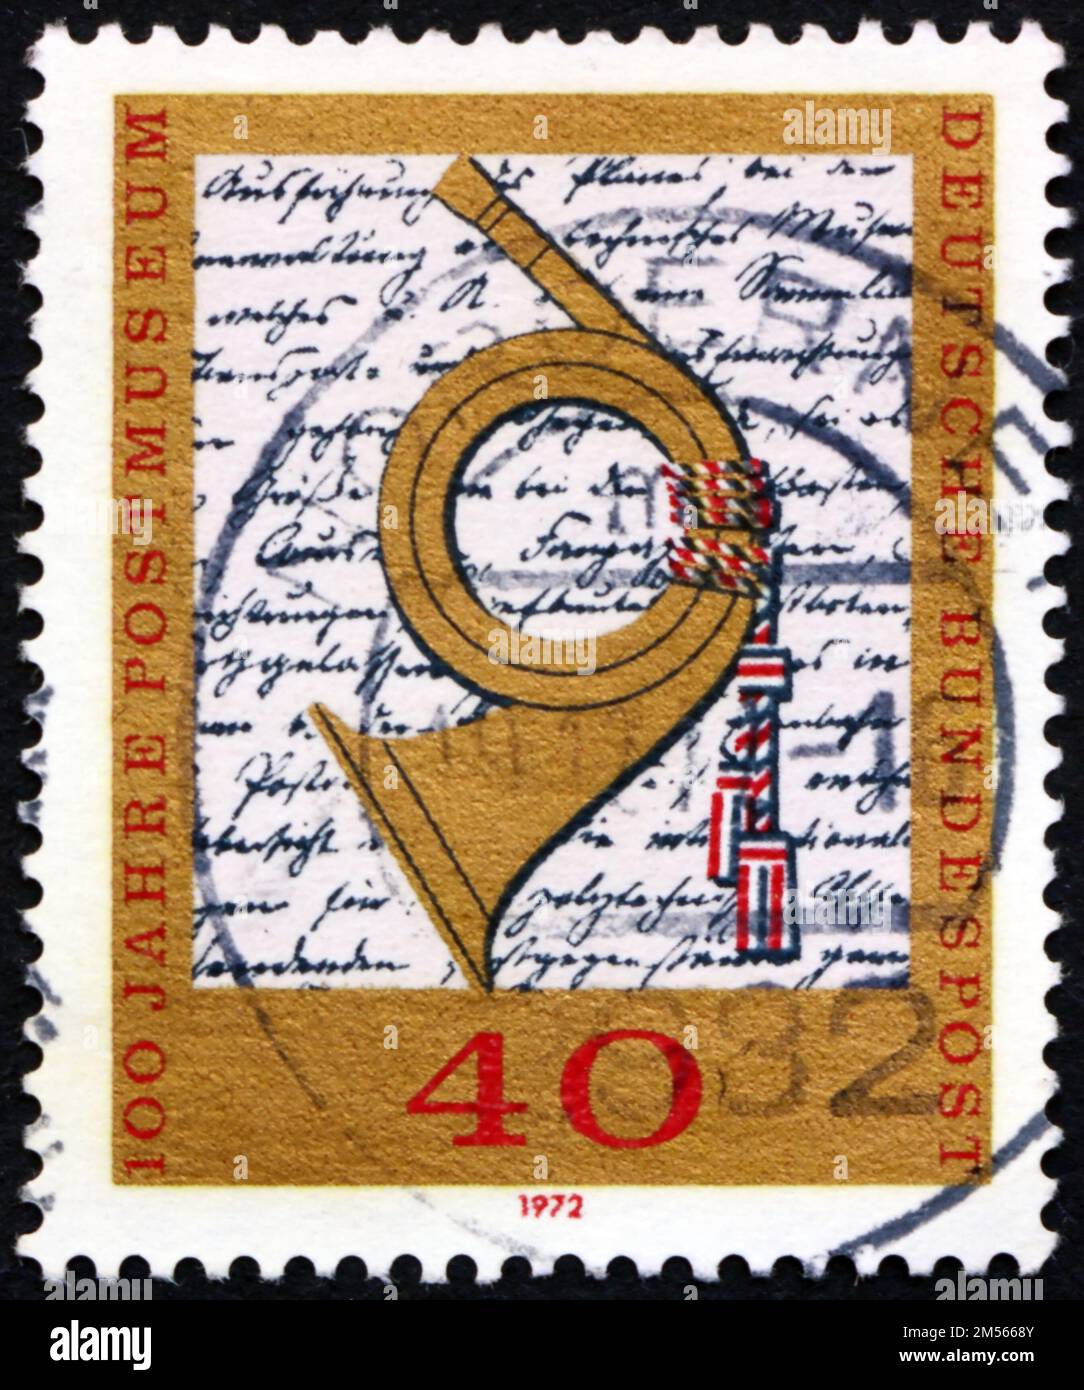 GERMANIA - CIRCA 1972: Un francobollo stampato in Germania mostra il corno e la pagina del decreto Heinrich von Stephans che istituisce il museo, centenario del Foto Stock